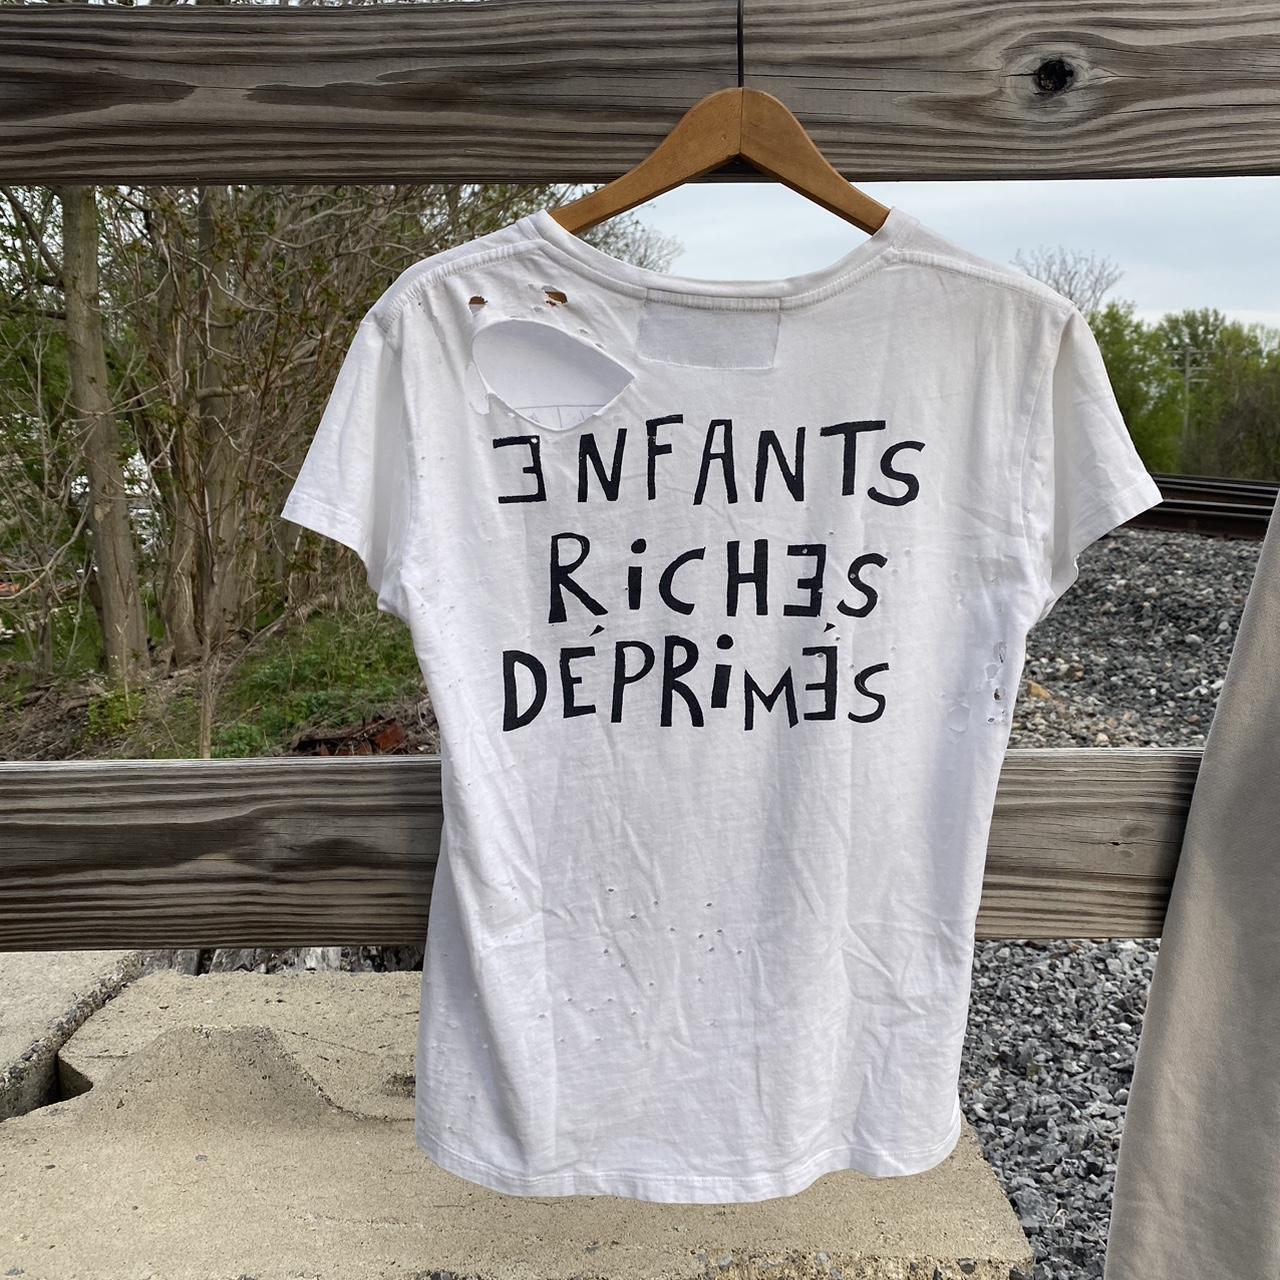 Enfants Riches Déprimés Men's White and Black T-shirt (2)